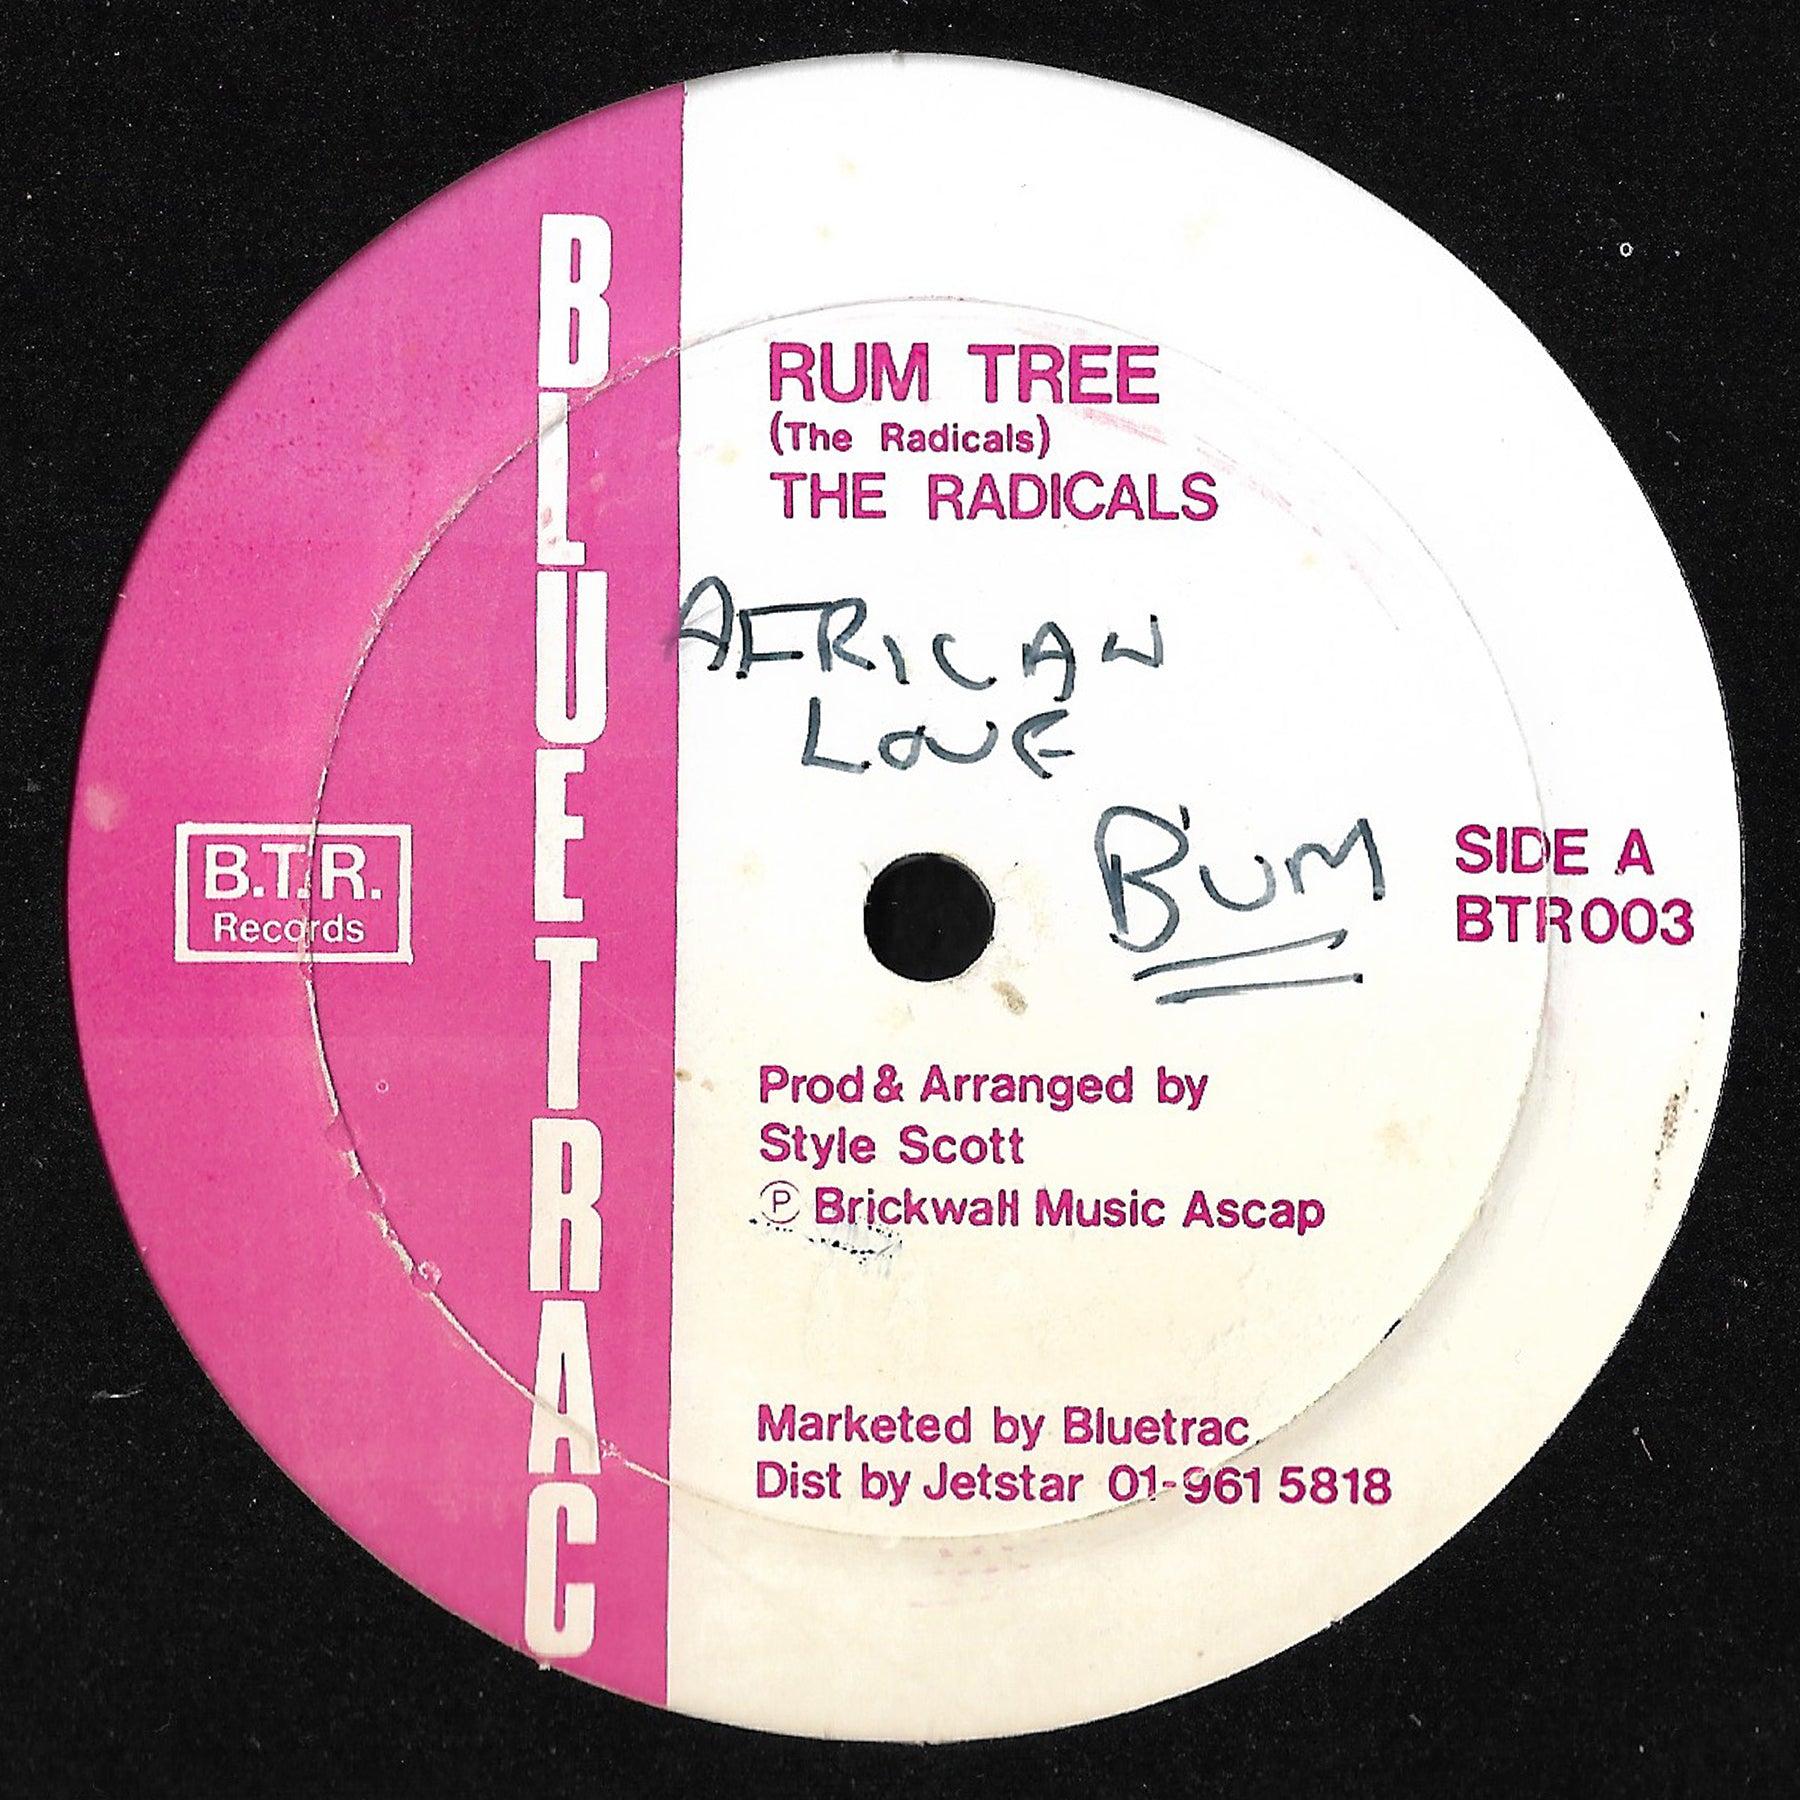 The Radicals - Rum Tree